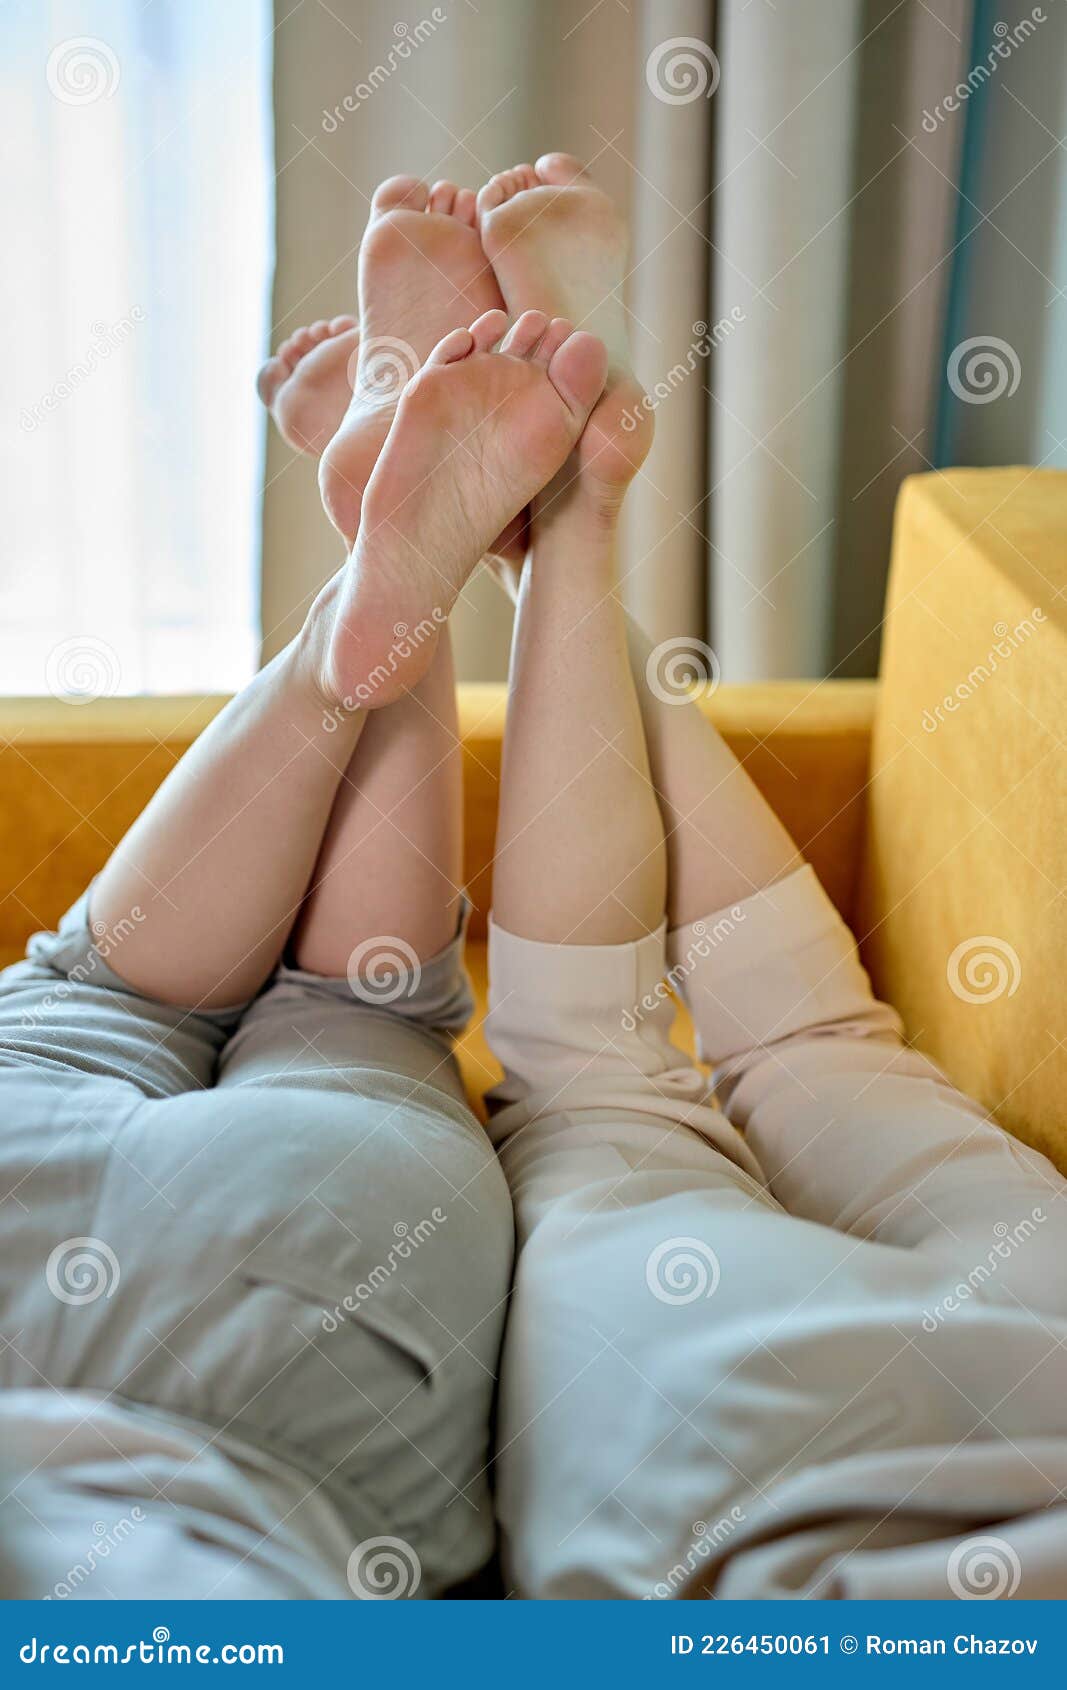 Lesbians and feet